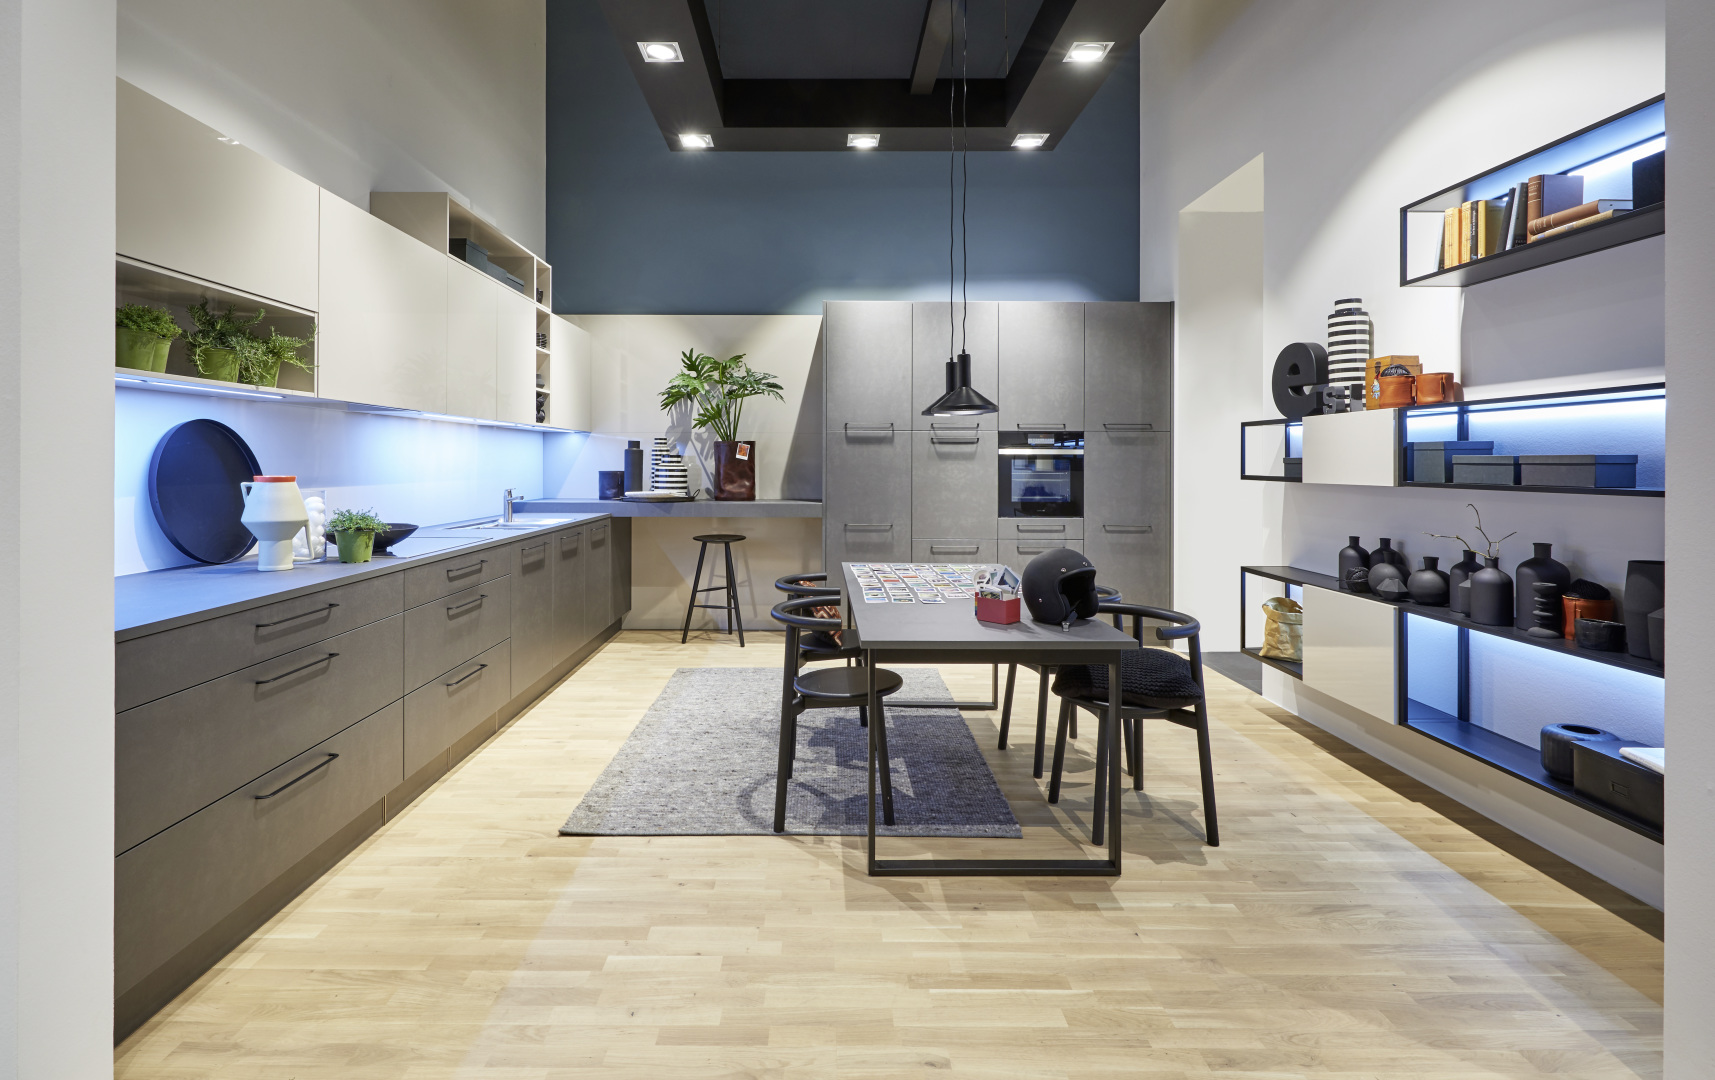 Nolte Küchen на LivingKitchen 2019